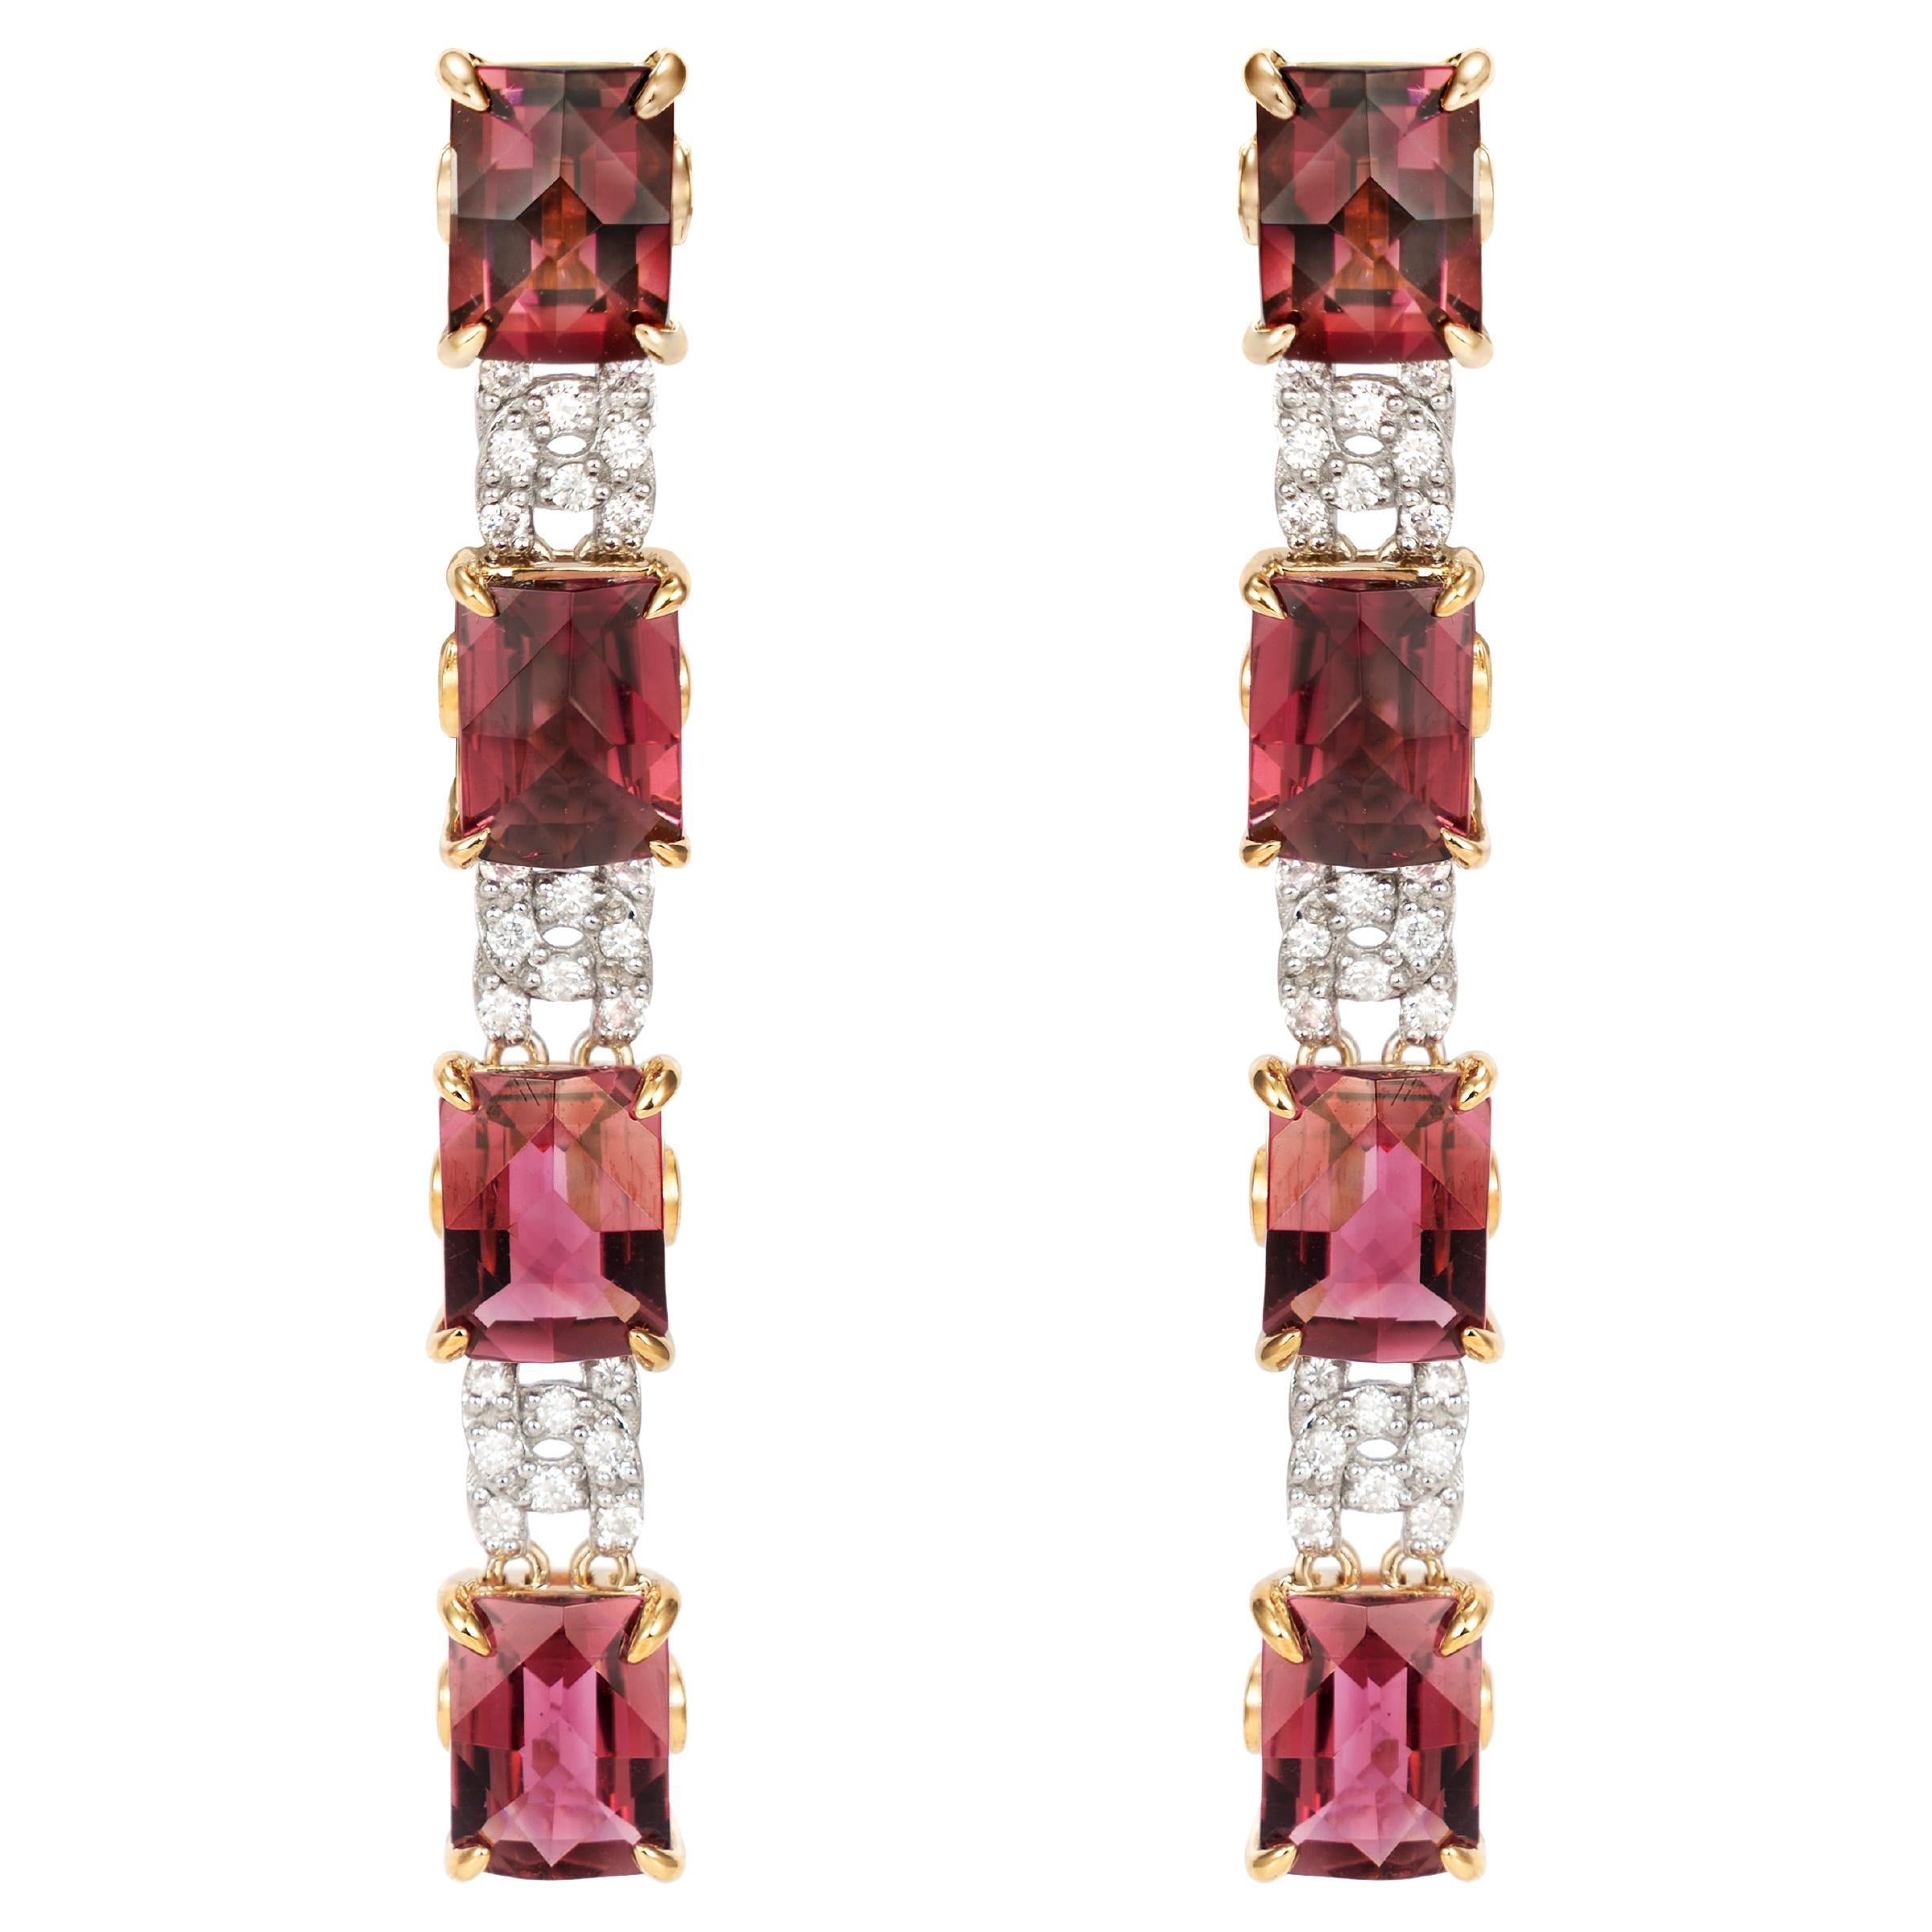 Fancy Cut Ombre Pink Tourmaline Earrings with Diamond in 18 Karat Gold